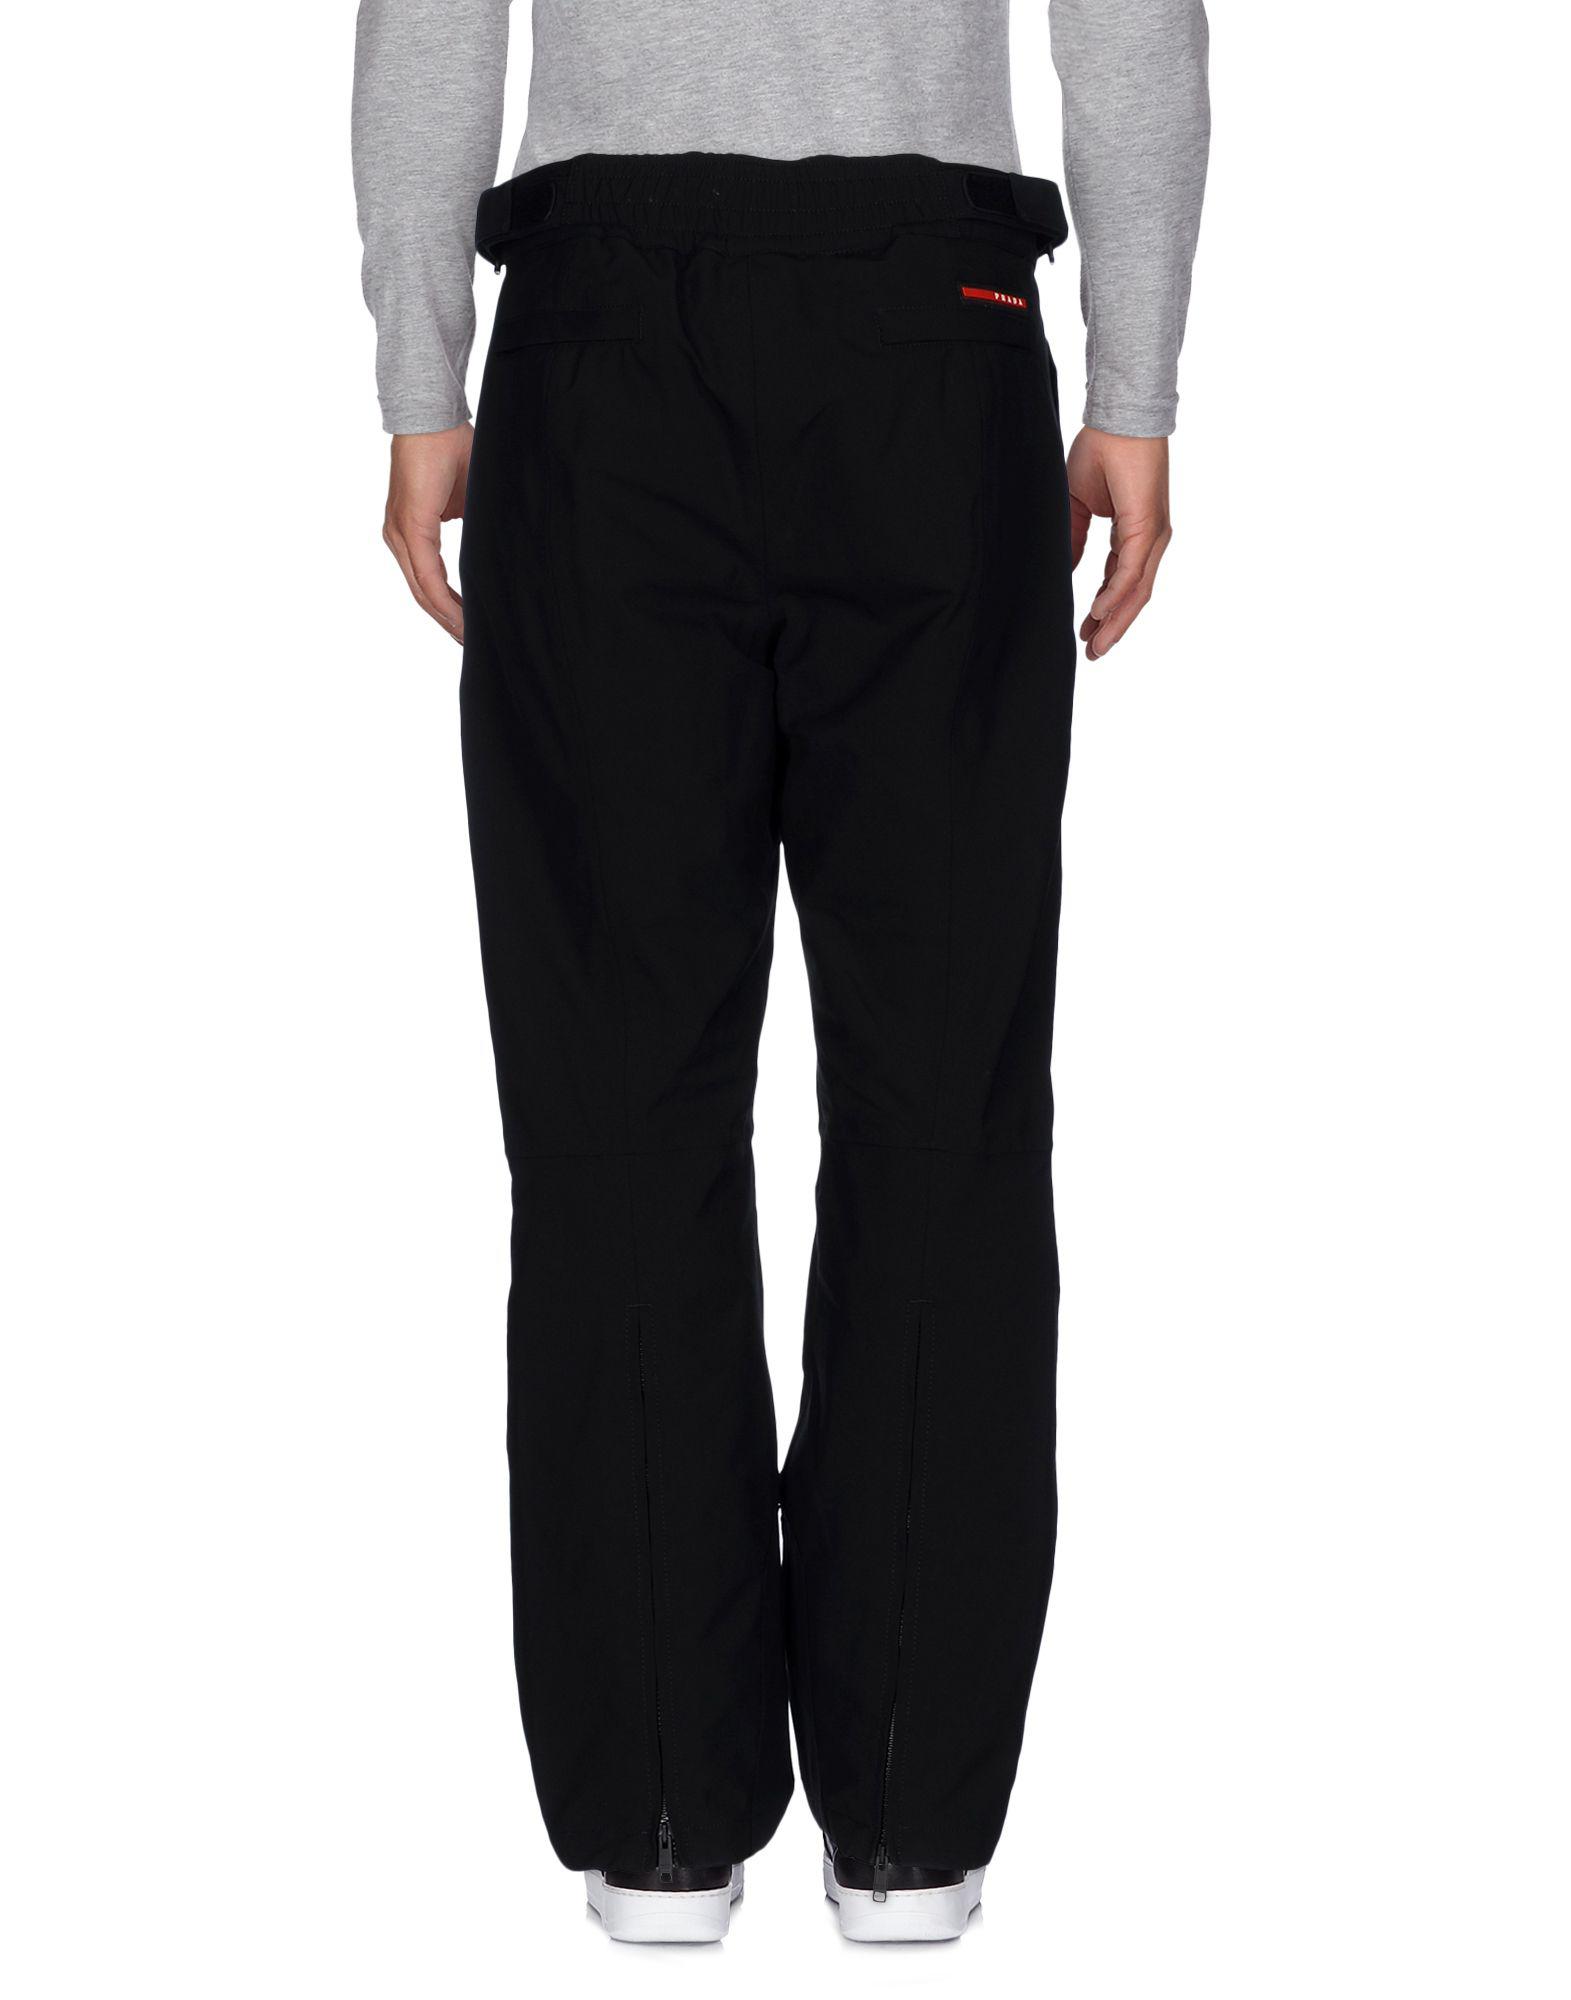 Prada Sport Synthetic Ski Pants in Black for Men - Lyst